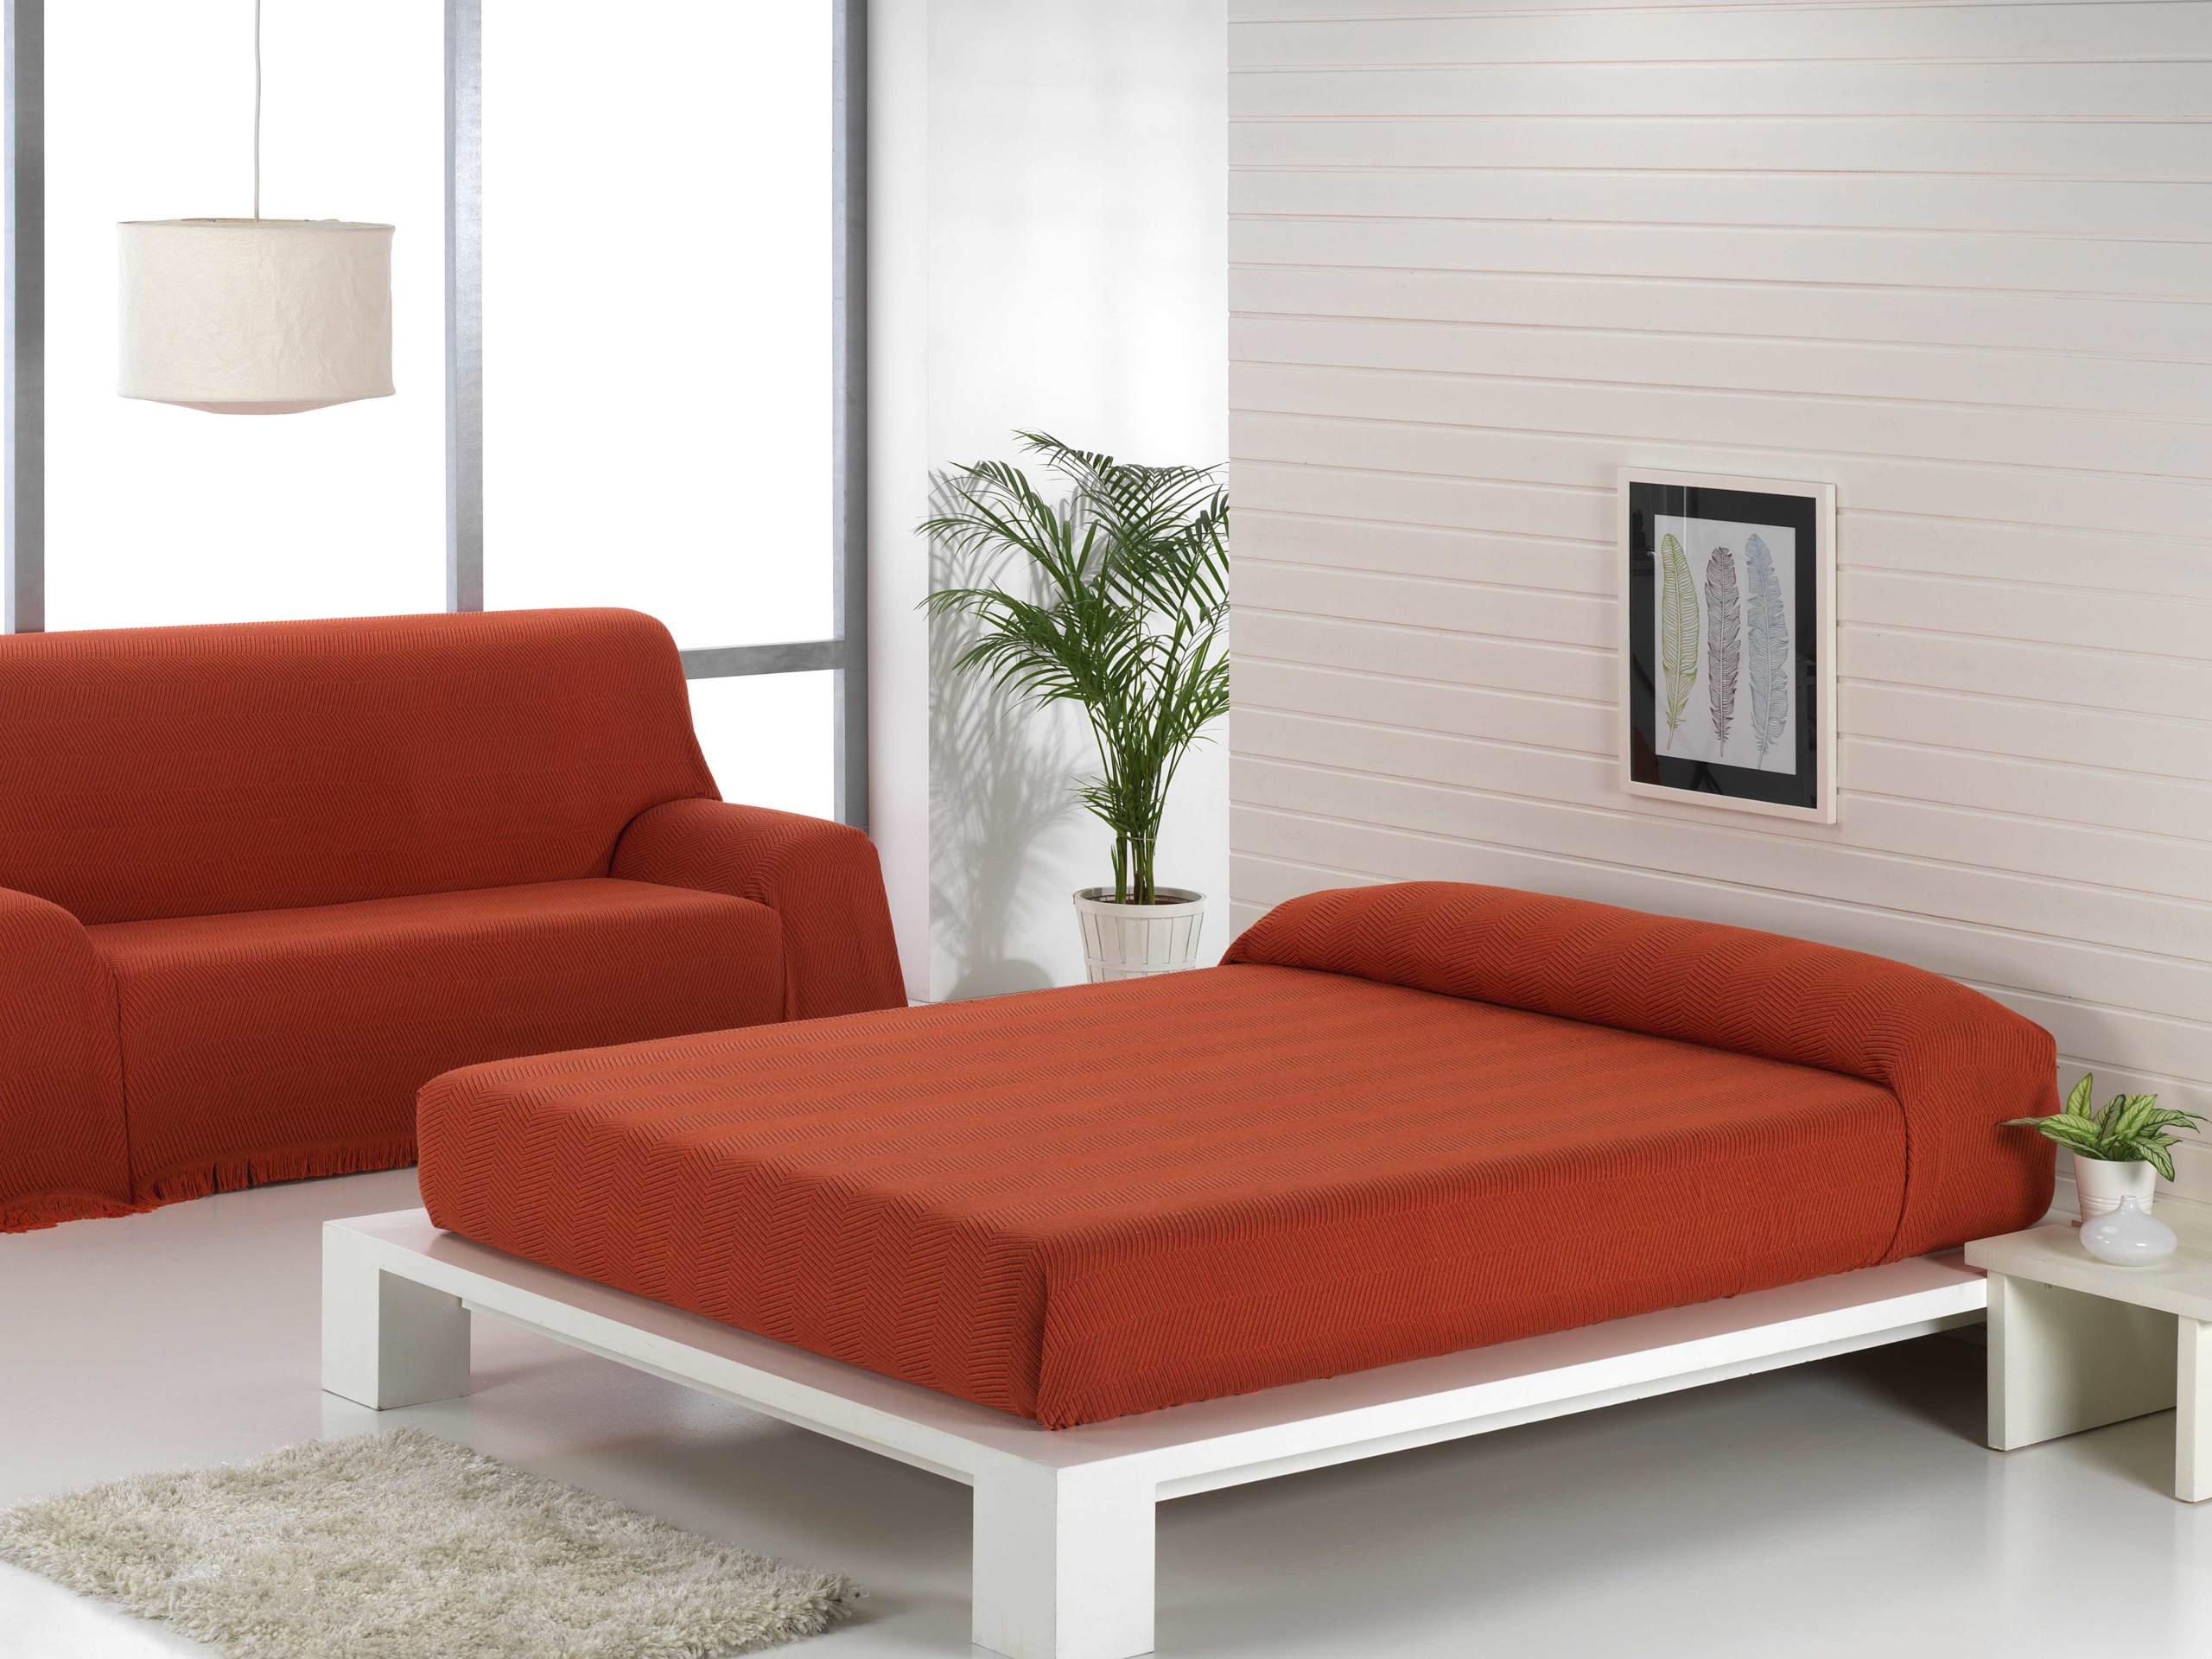 Colcha Multiusos Espiga Naranja Granate para cama, sofá, sillón.